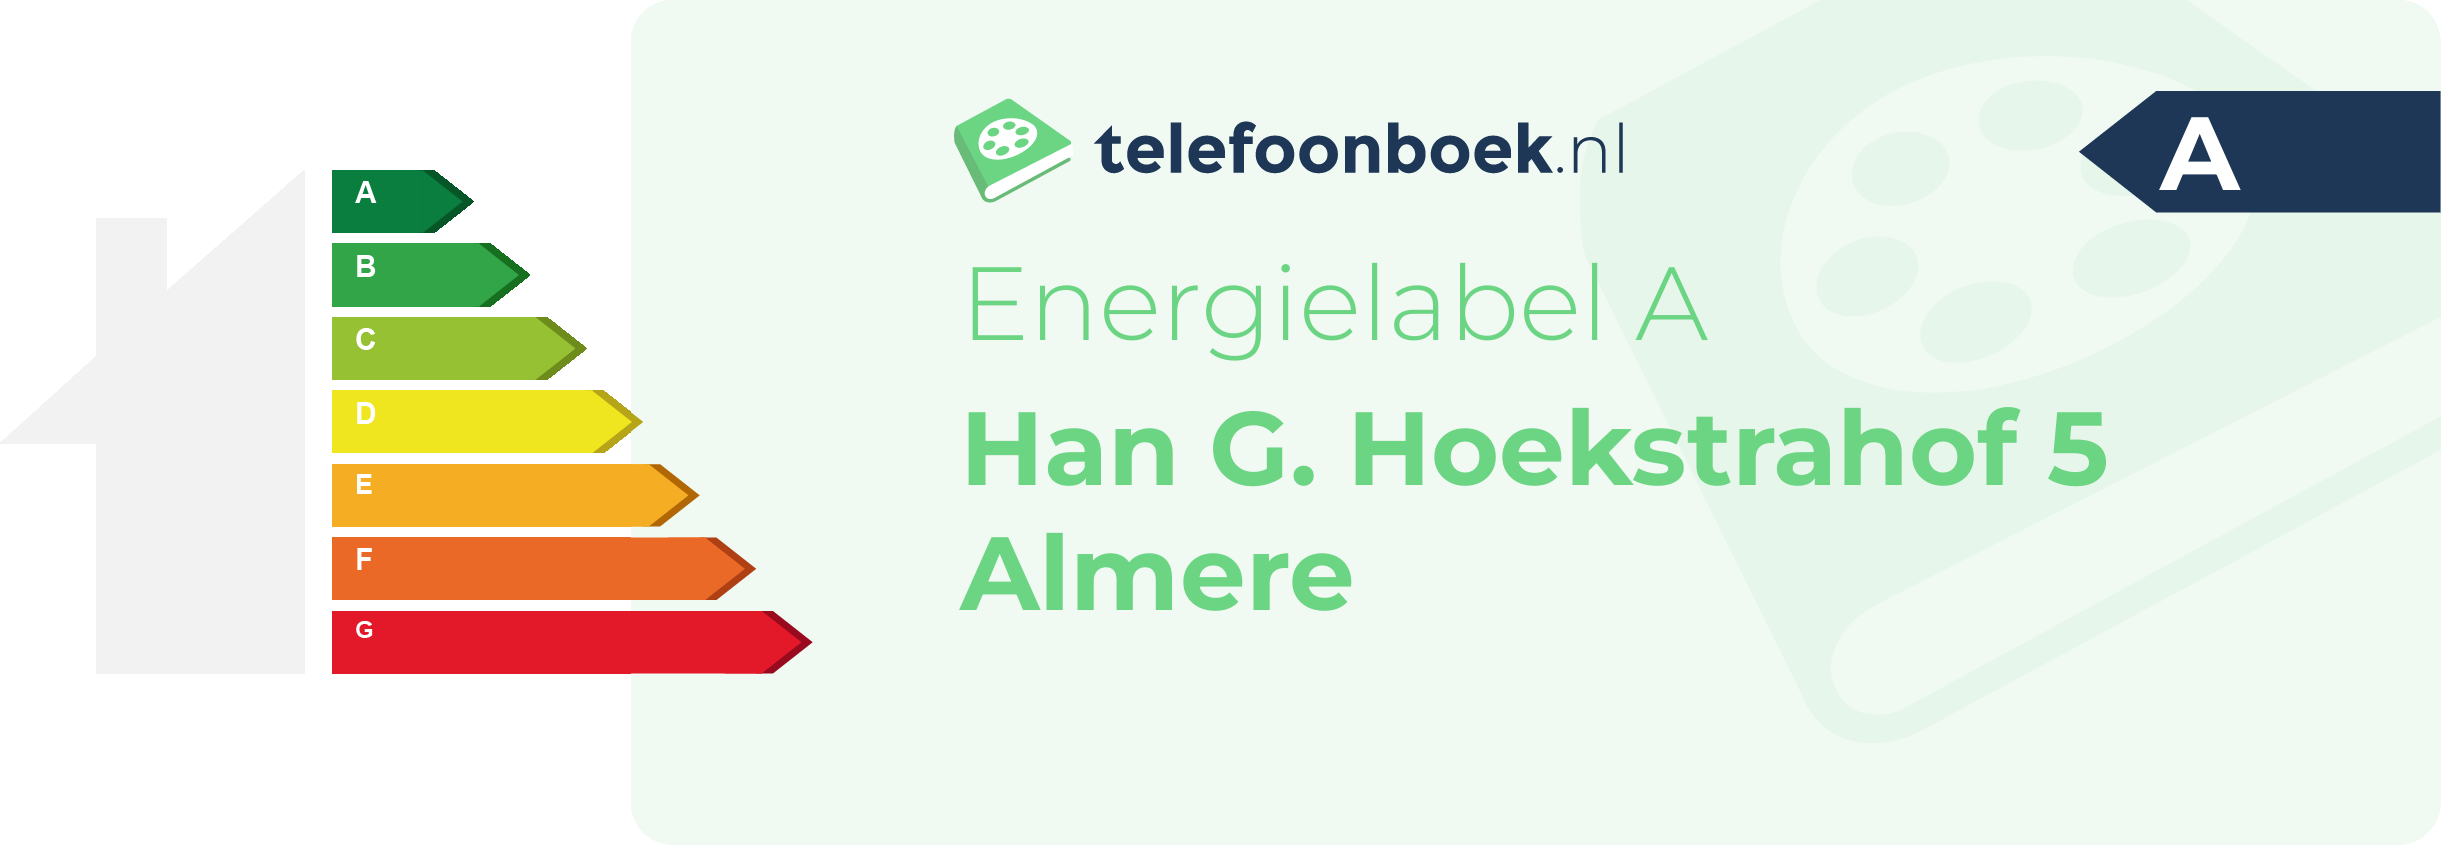 Energielabel Han G. Hoekstrahof 5 Almere